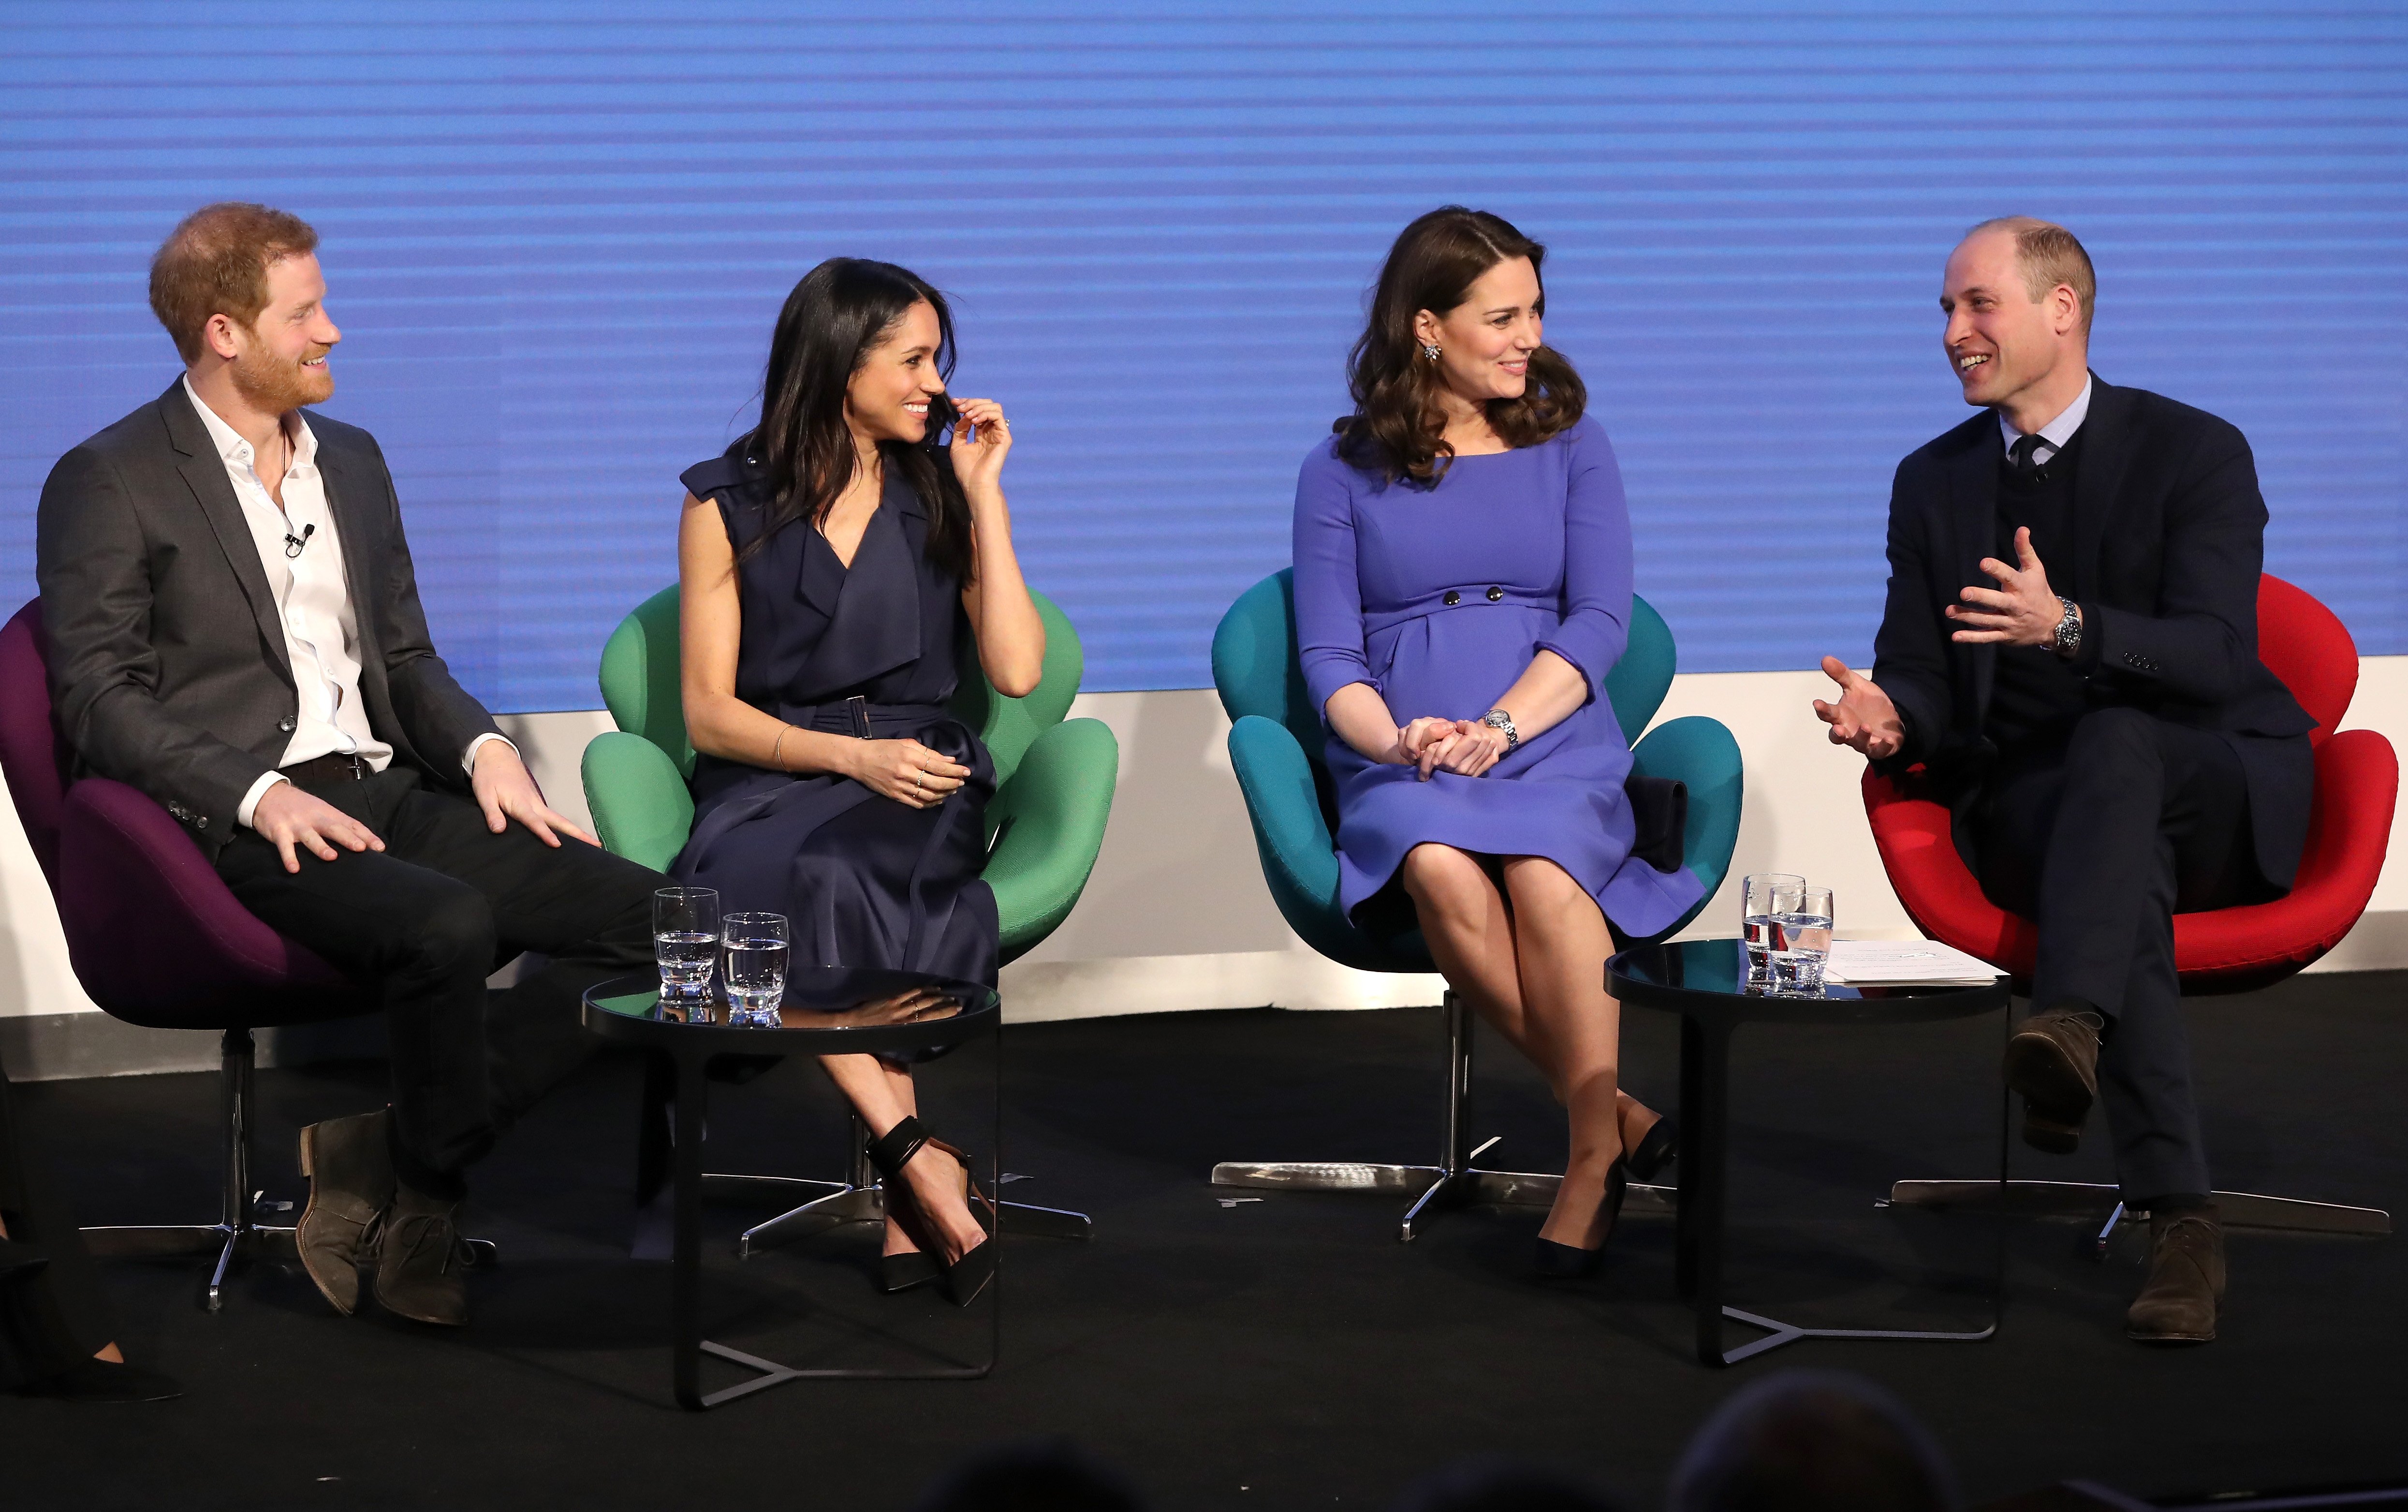 Prinz Harry, Meghan Markle, Catherine und Prinz William besuchen das erste jährliche Royal Foundation Forum am 28. Februar 2018 in London | Quelle: Getty Images